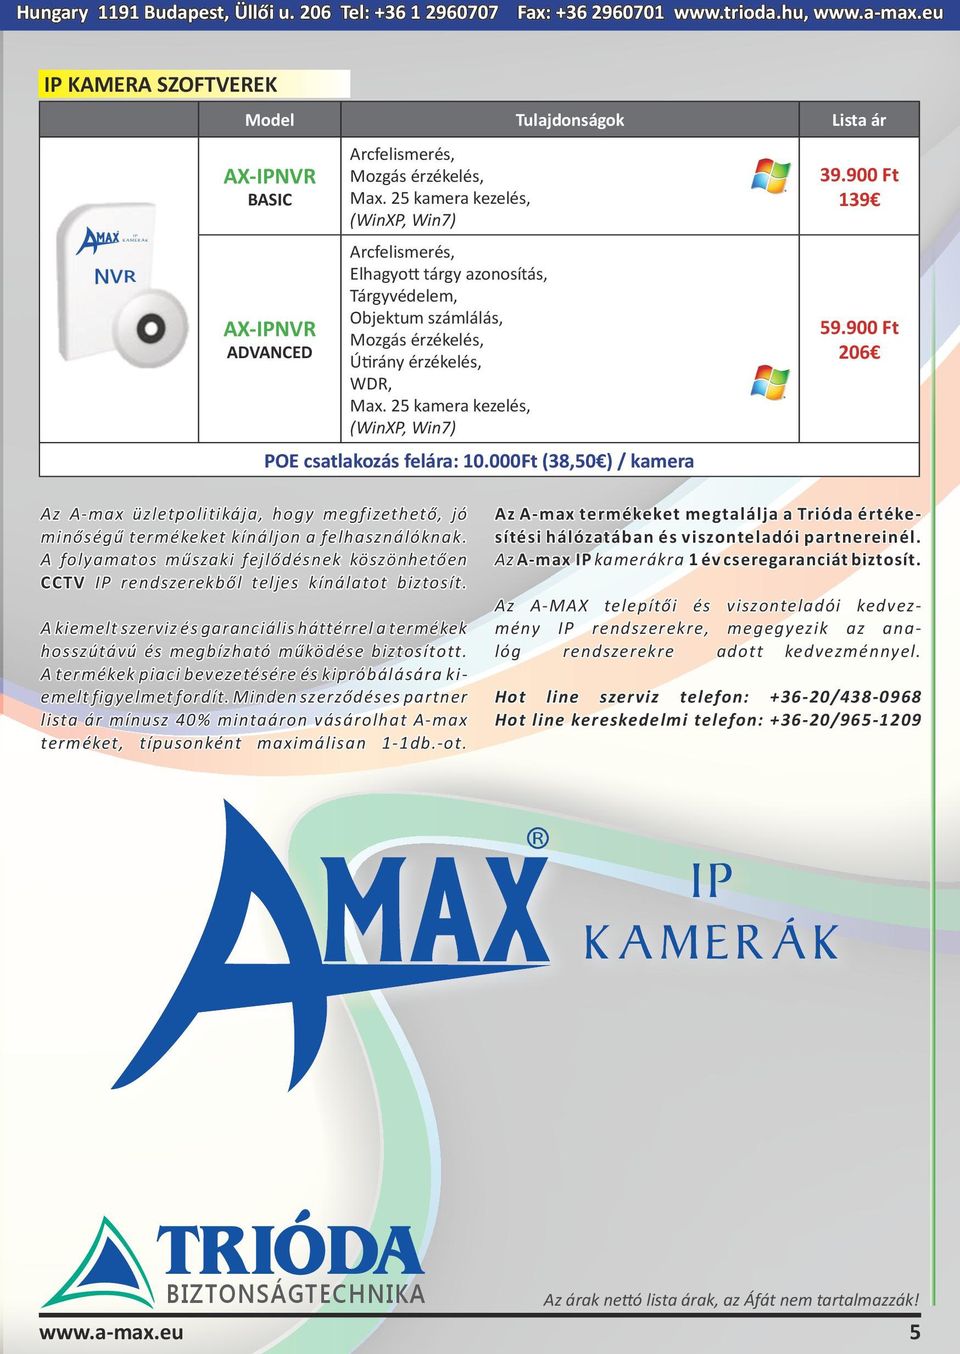 25 kamera kezelés, (WinXP, Win7) Az A-max üzletpolitikája, hogy megfizethető, jó minőségű termékeket kínáljon a felhasználóknak.